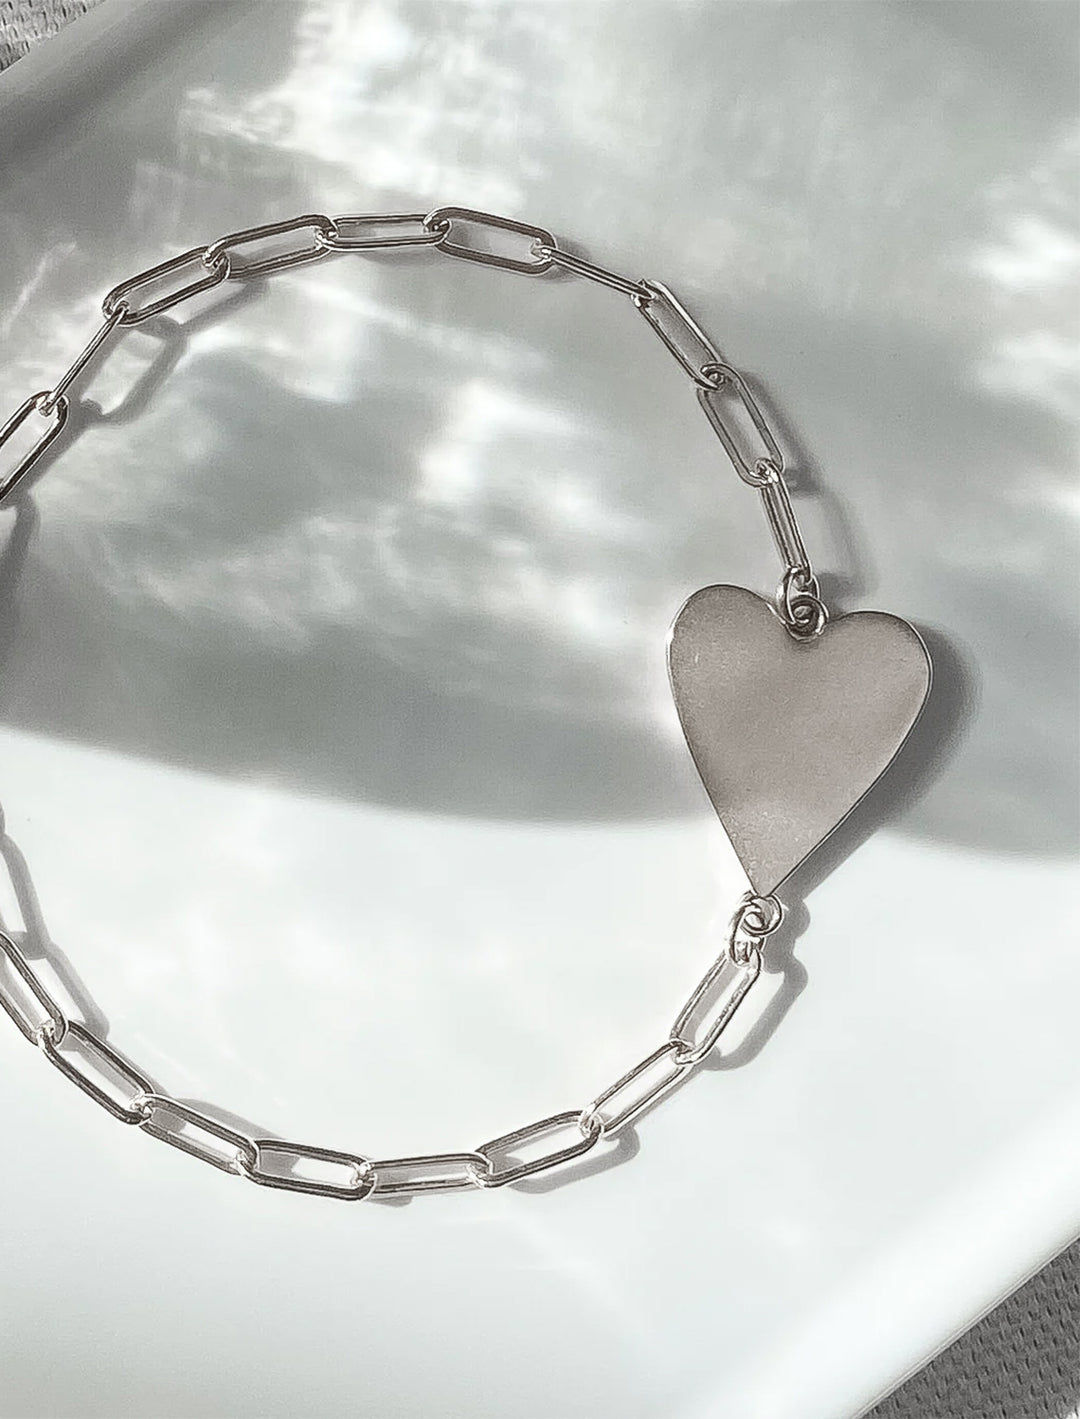 Stylized laydown of THATCH's amaya heart bracelet in silver.